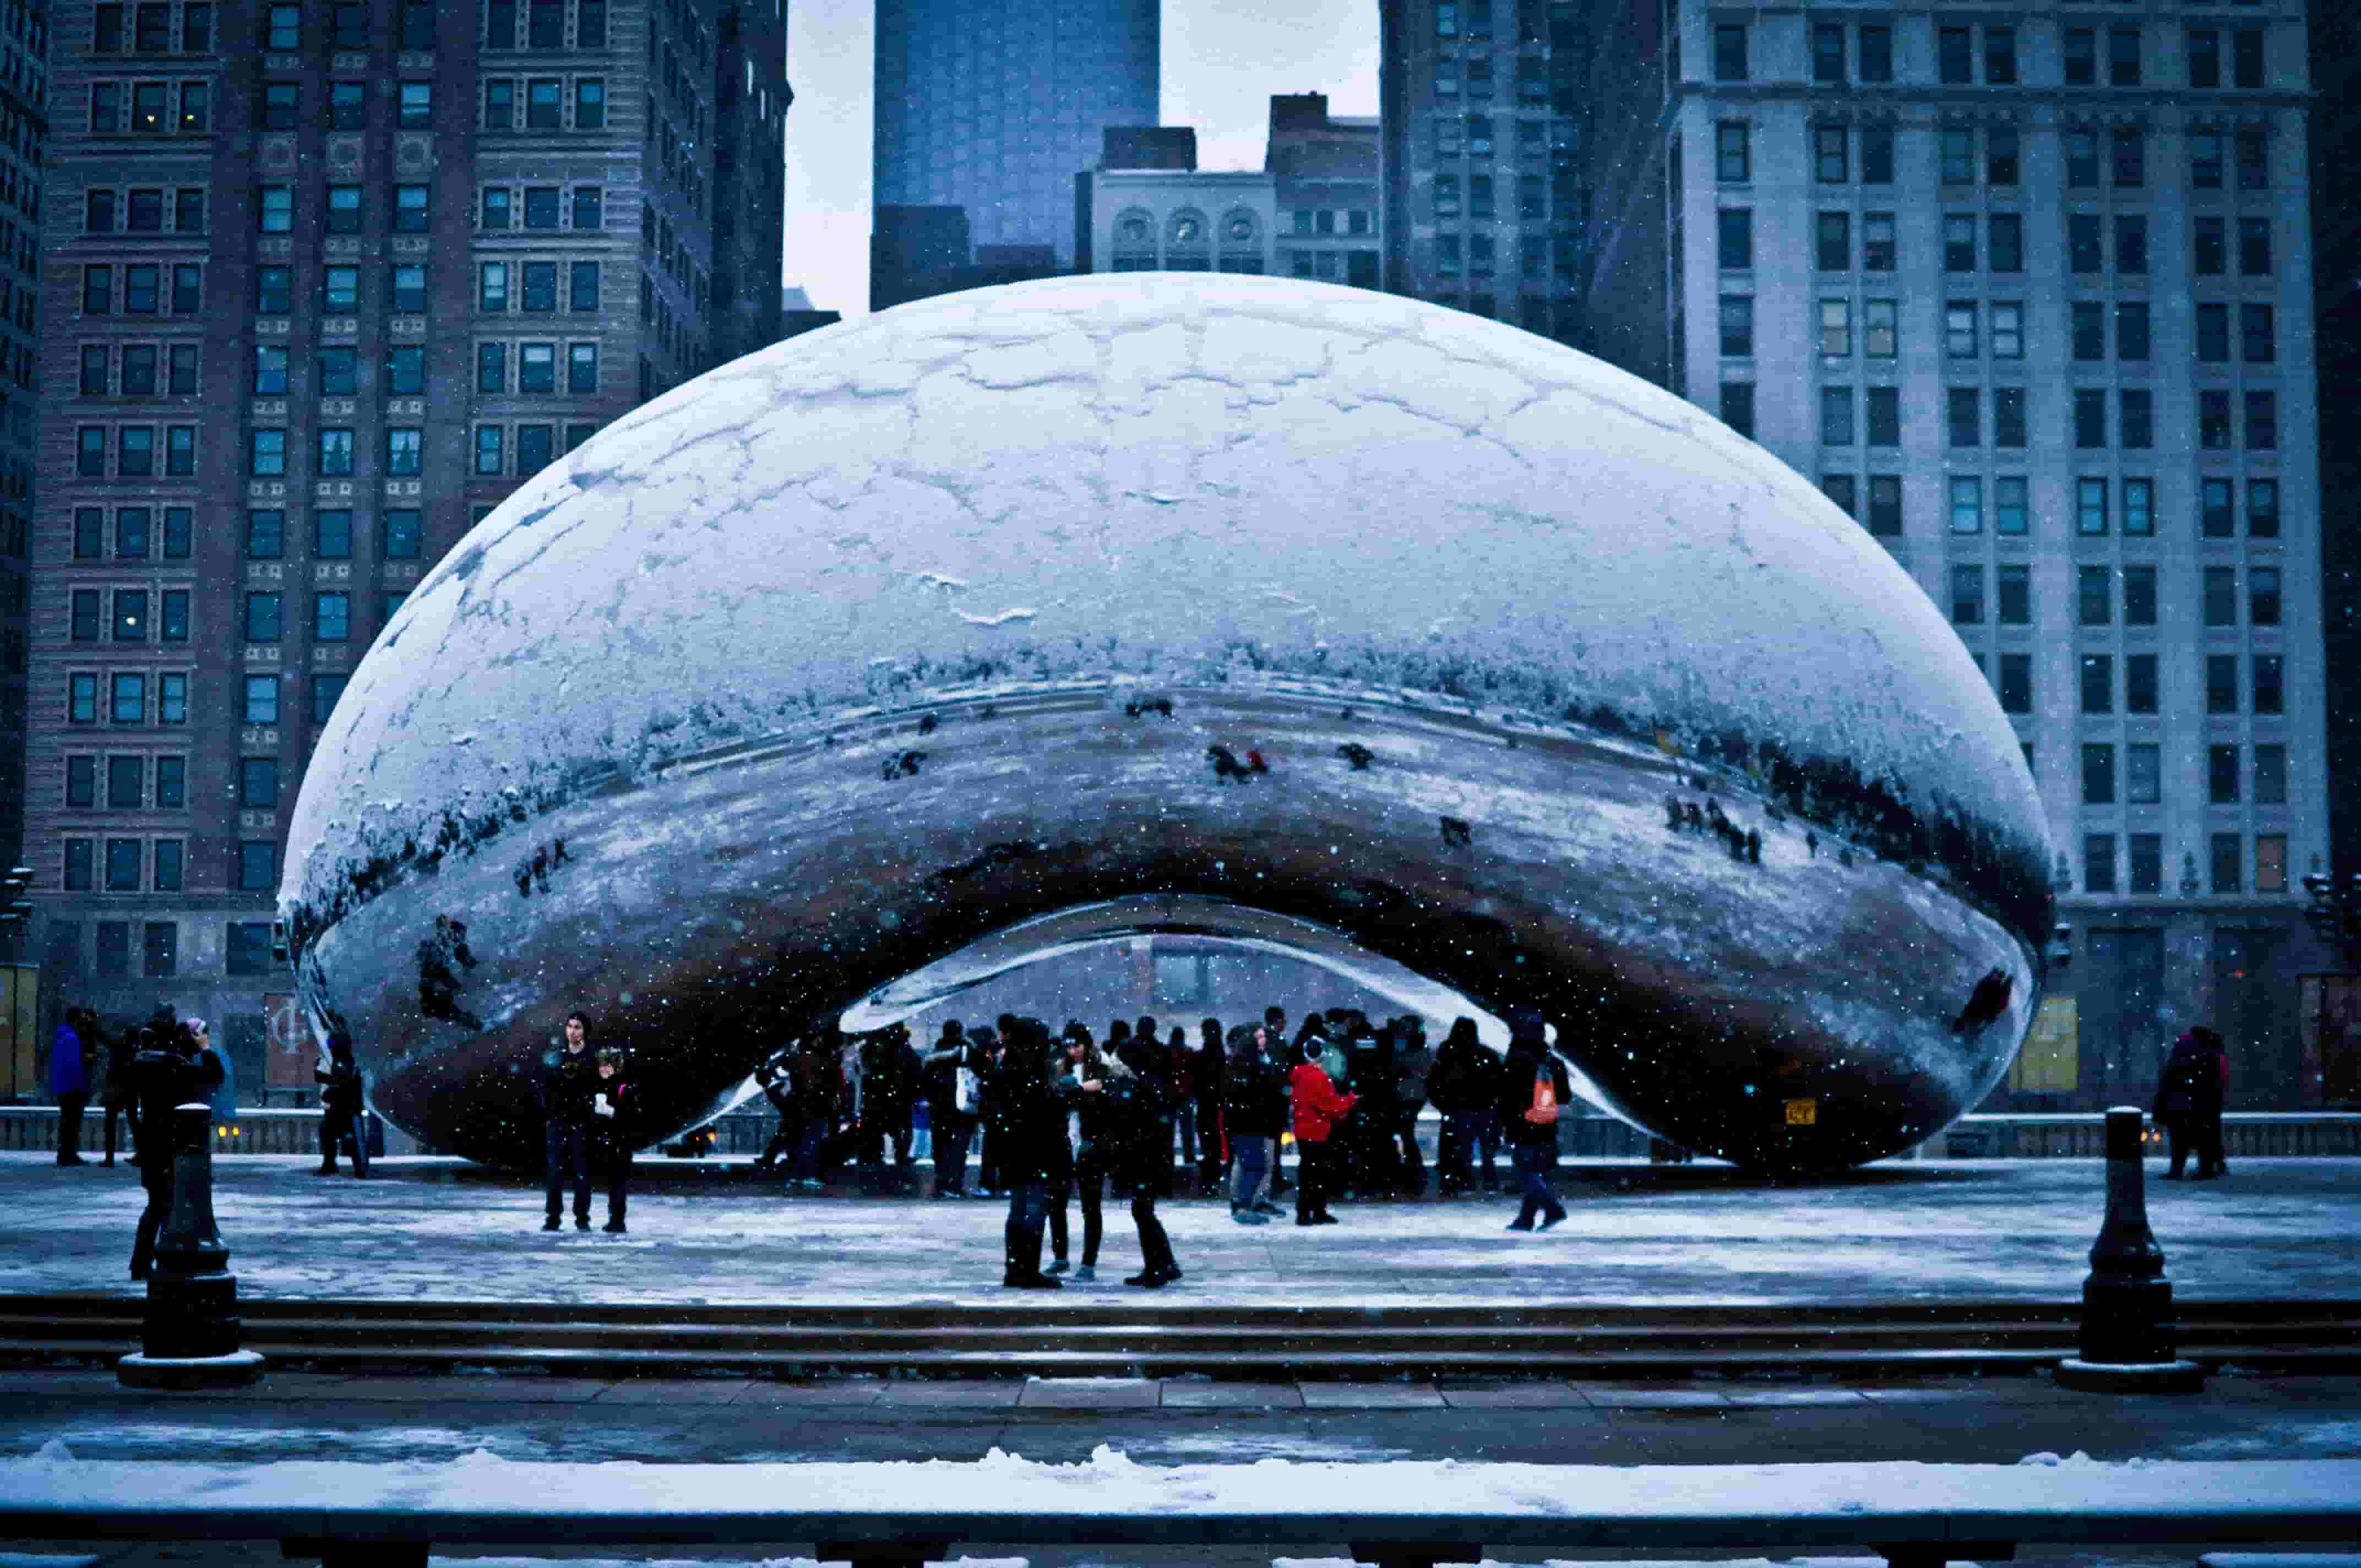 Chicago's Millennium Park Bean sculpture in winter